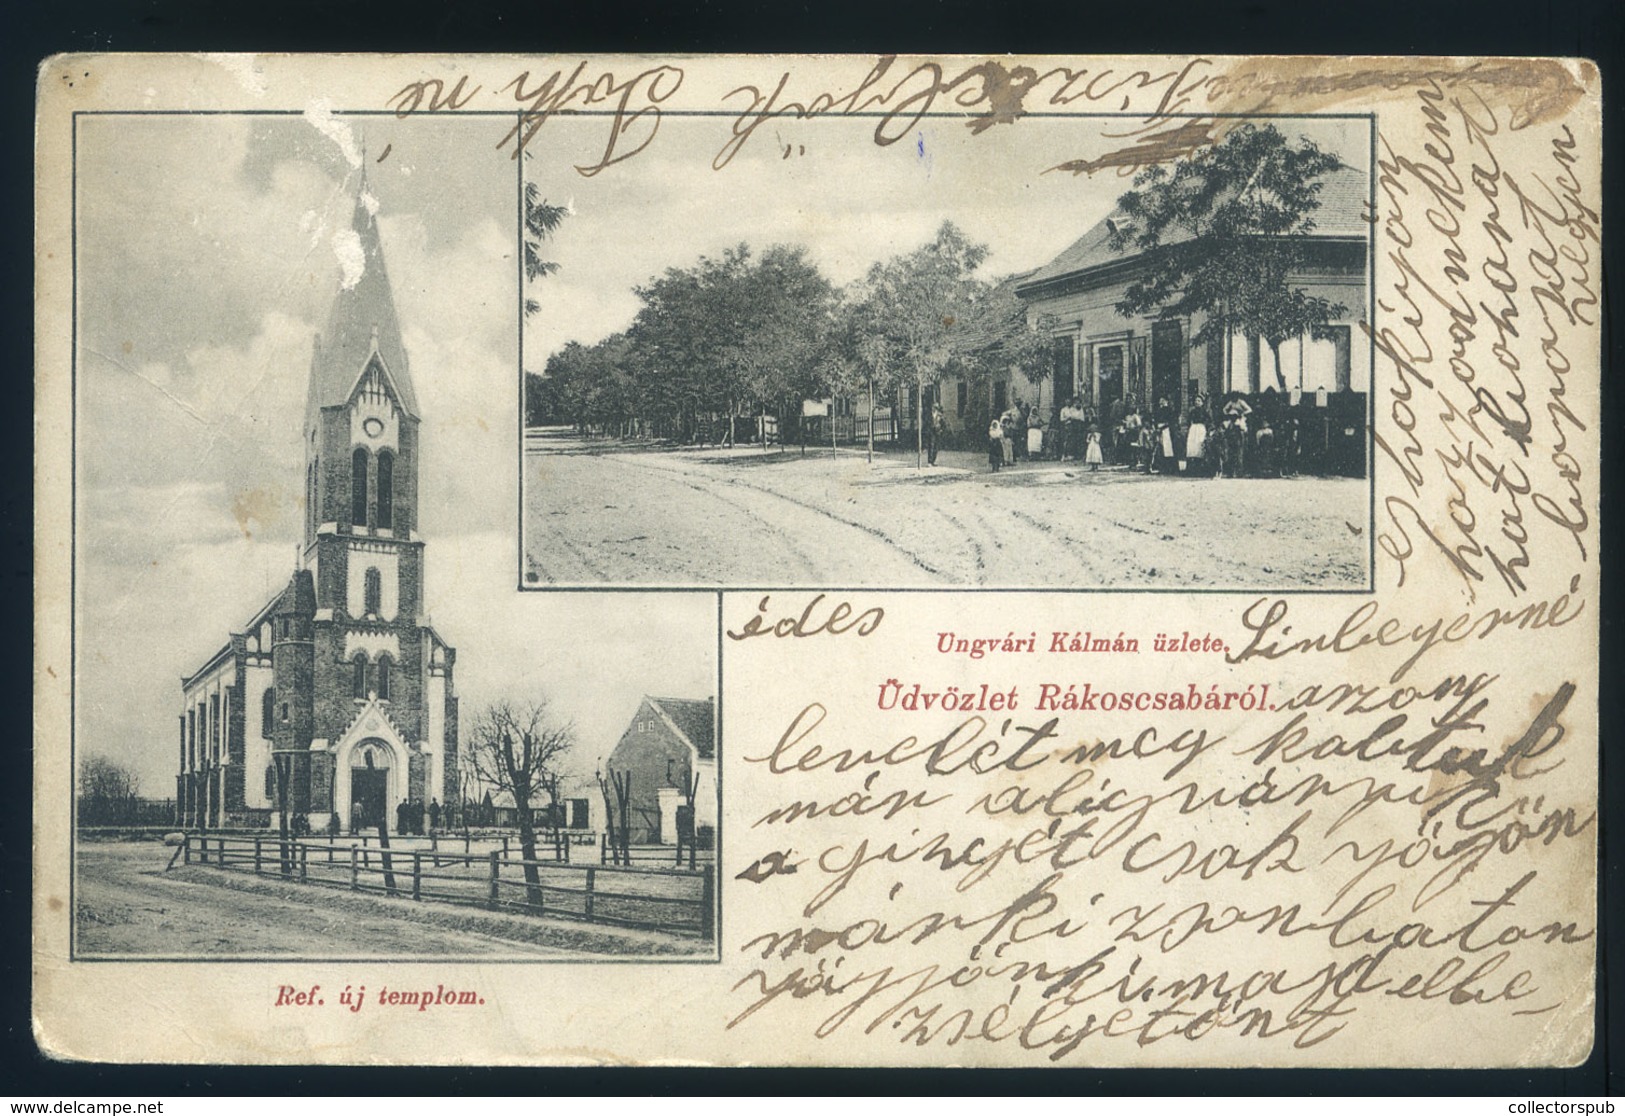 RÁKOSCSABA 1907.  Református új Templom, Ungvári Kálmán üzlete , Régi Képeslap  /  RÁKOSCSABA 1907 New Calvinist Church  - Hungary